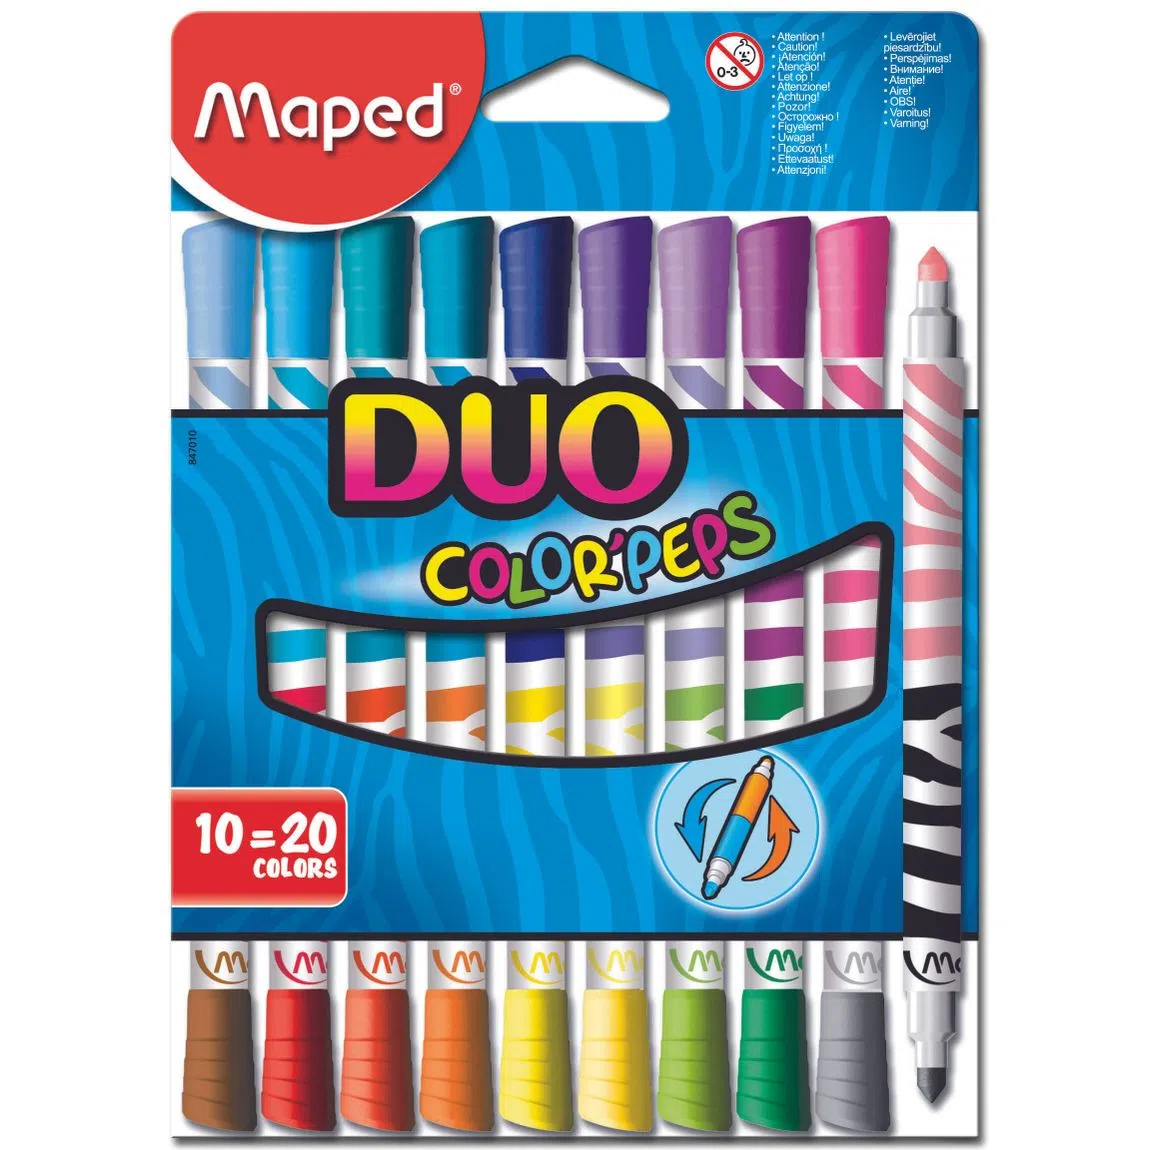 Plumones de colores duo Maped con 10 pie Bolsa con 10 plumones duo (20 colores diferentes), punta media bloqueada de 4.75 mm, ultra lavables, larga duración, decorado tipo cebra                                                                                                                        zas  colorpeps duo colors                - 3154148470106